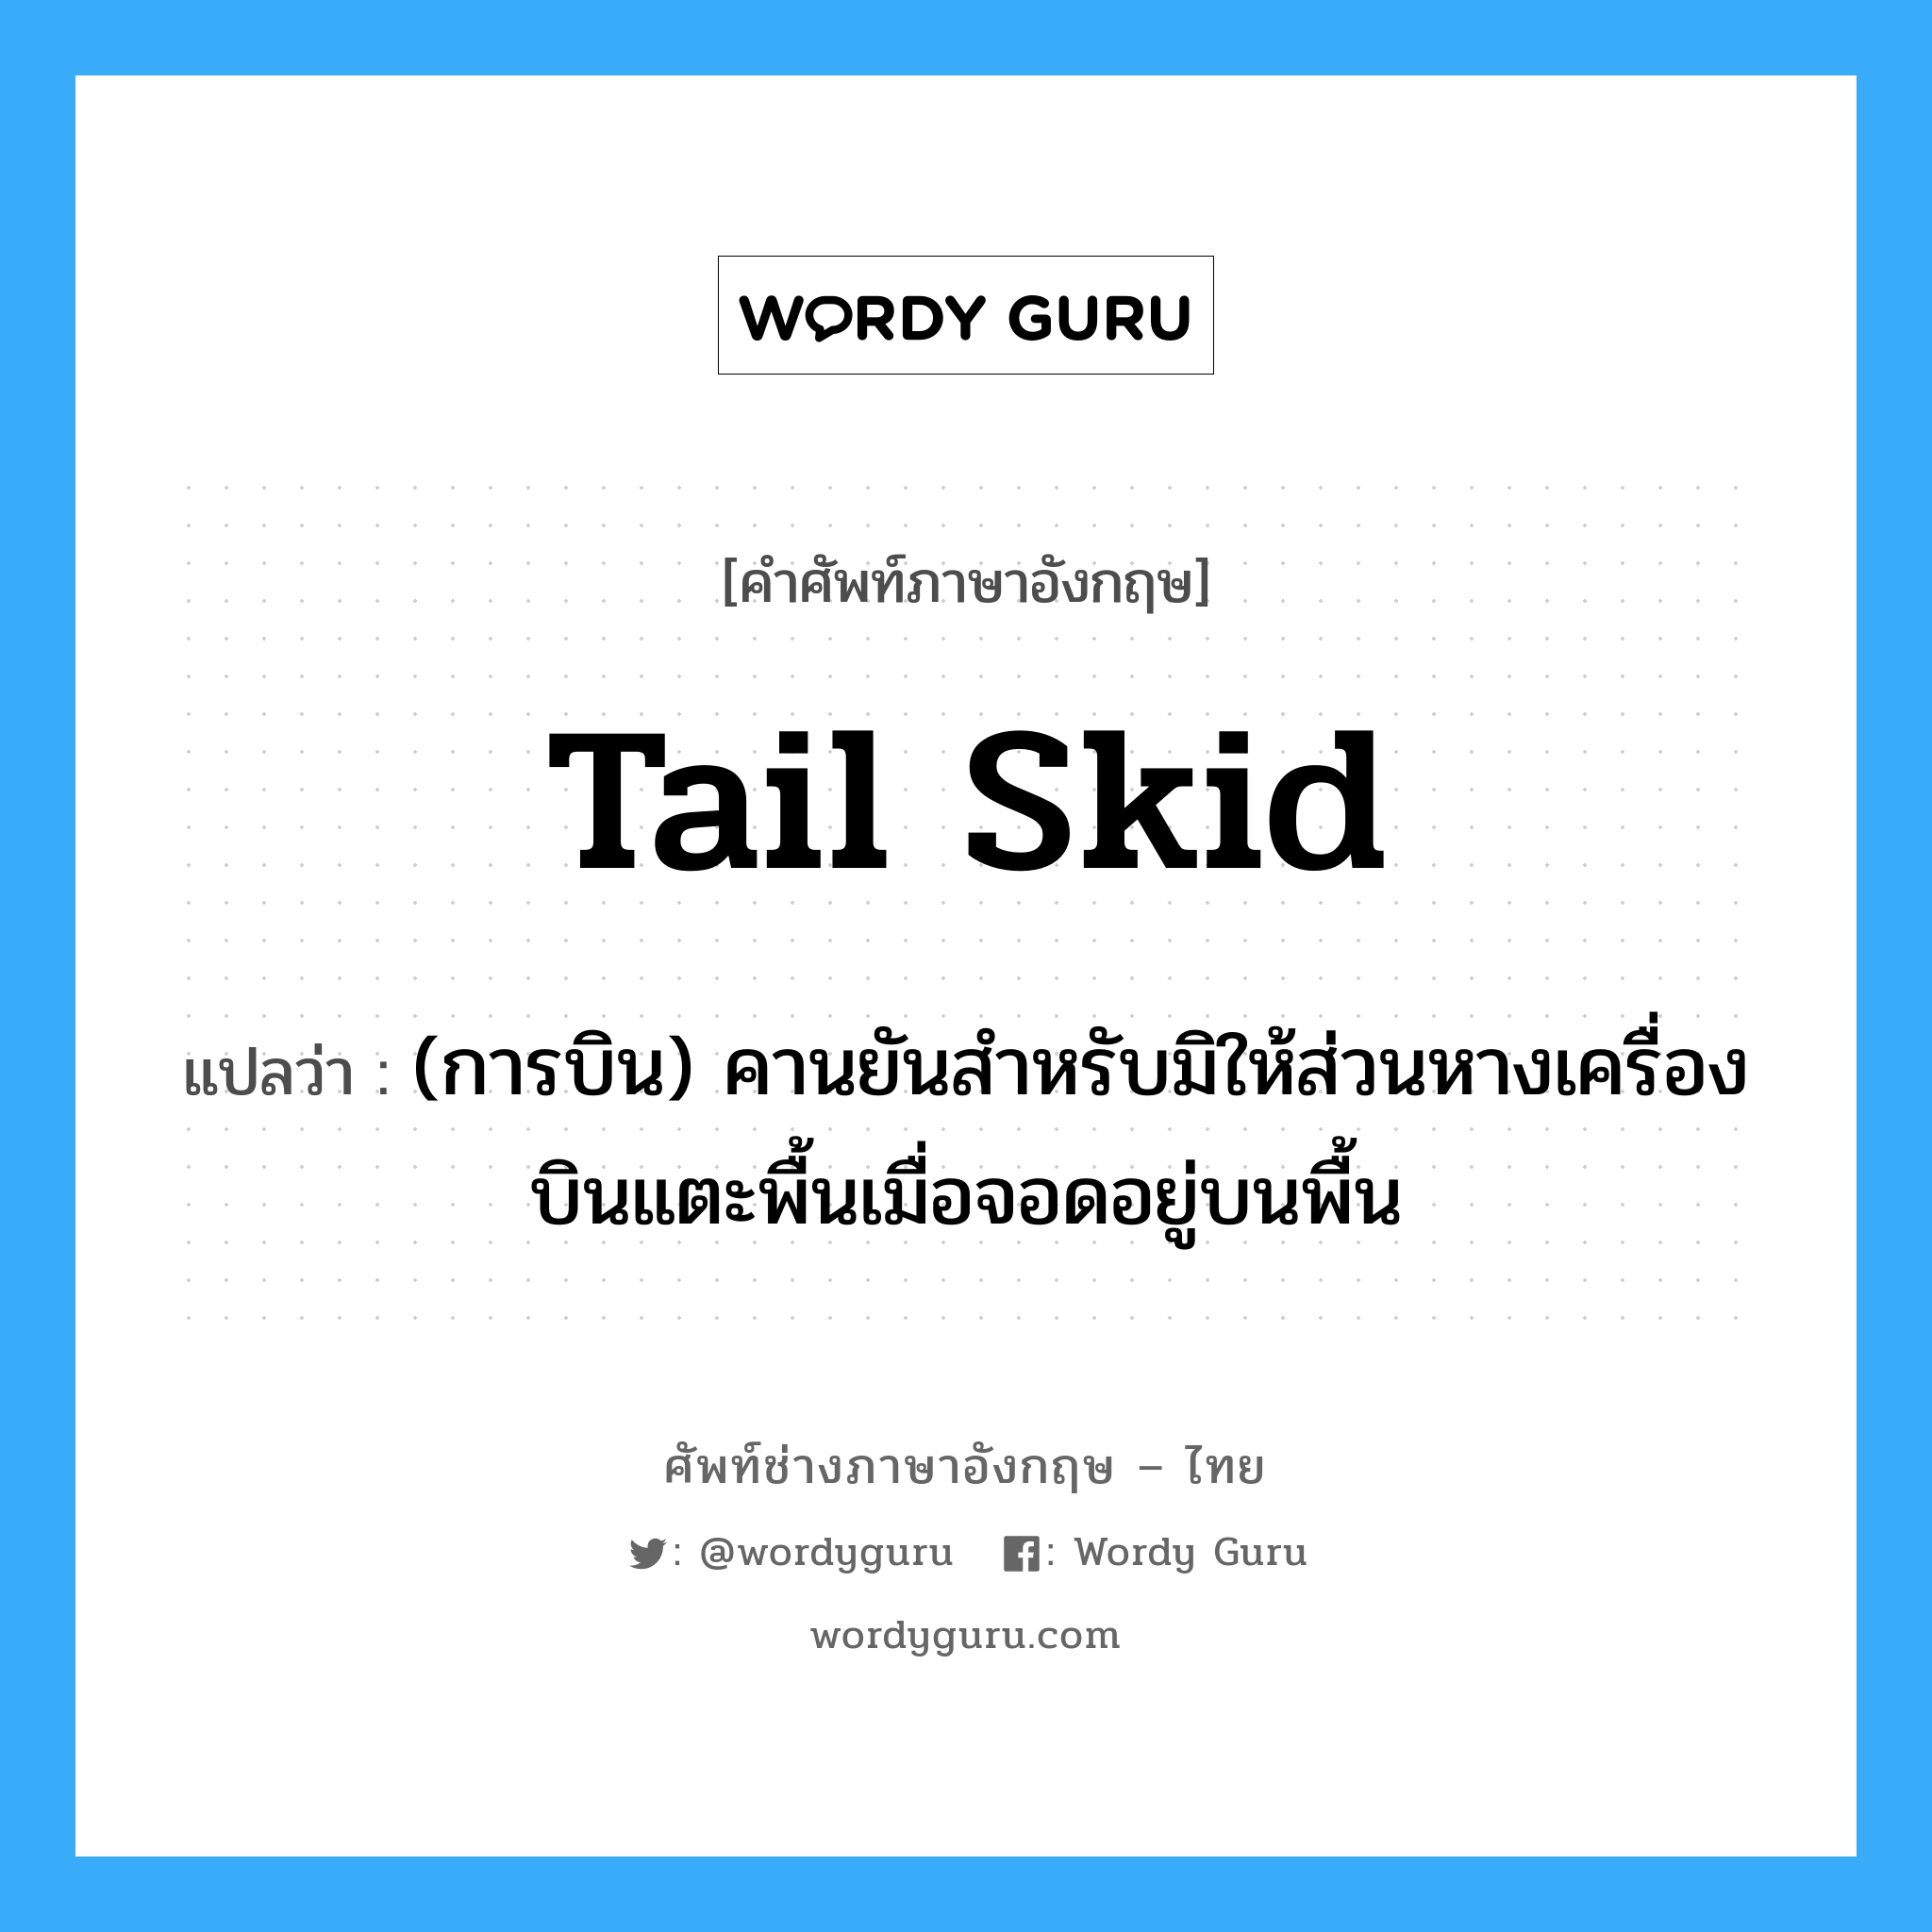 tail skid แปลว่า?, คำศัพท์ช่างภาษาอังกฤษ - ไทย tail skid คำศัพท์ภาษาอังกฤษ tail skid แปลว่า (การบิน) คานยันสำหรับมิให้ส่วนหางเครื่องบินแตะพื้นเมื่อจอดอยู่บนพื้น